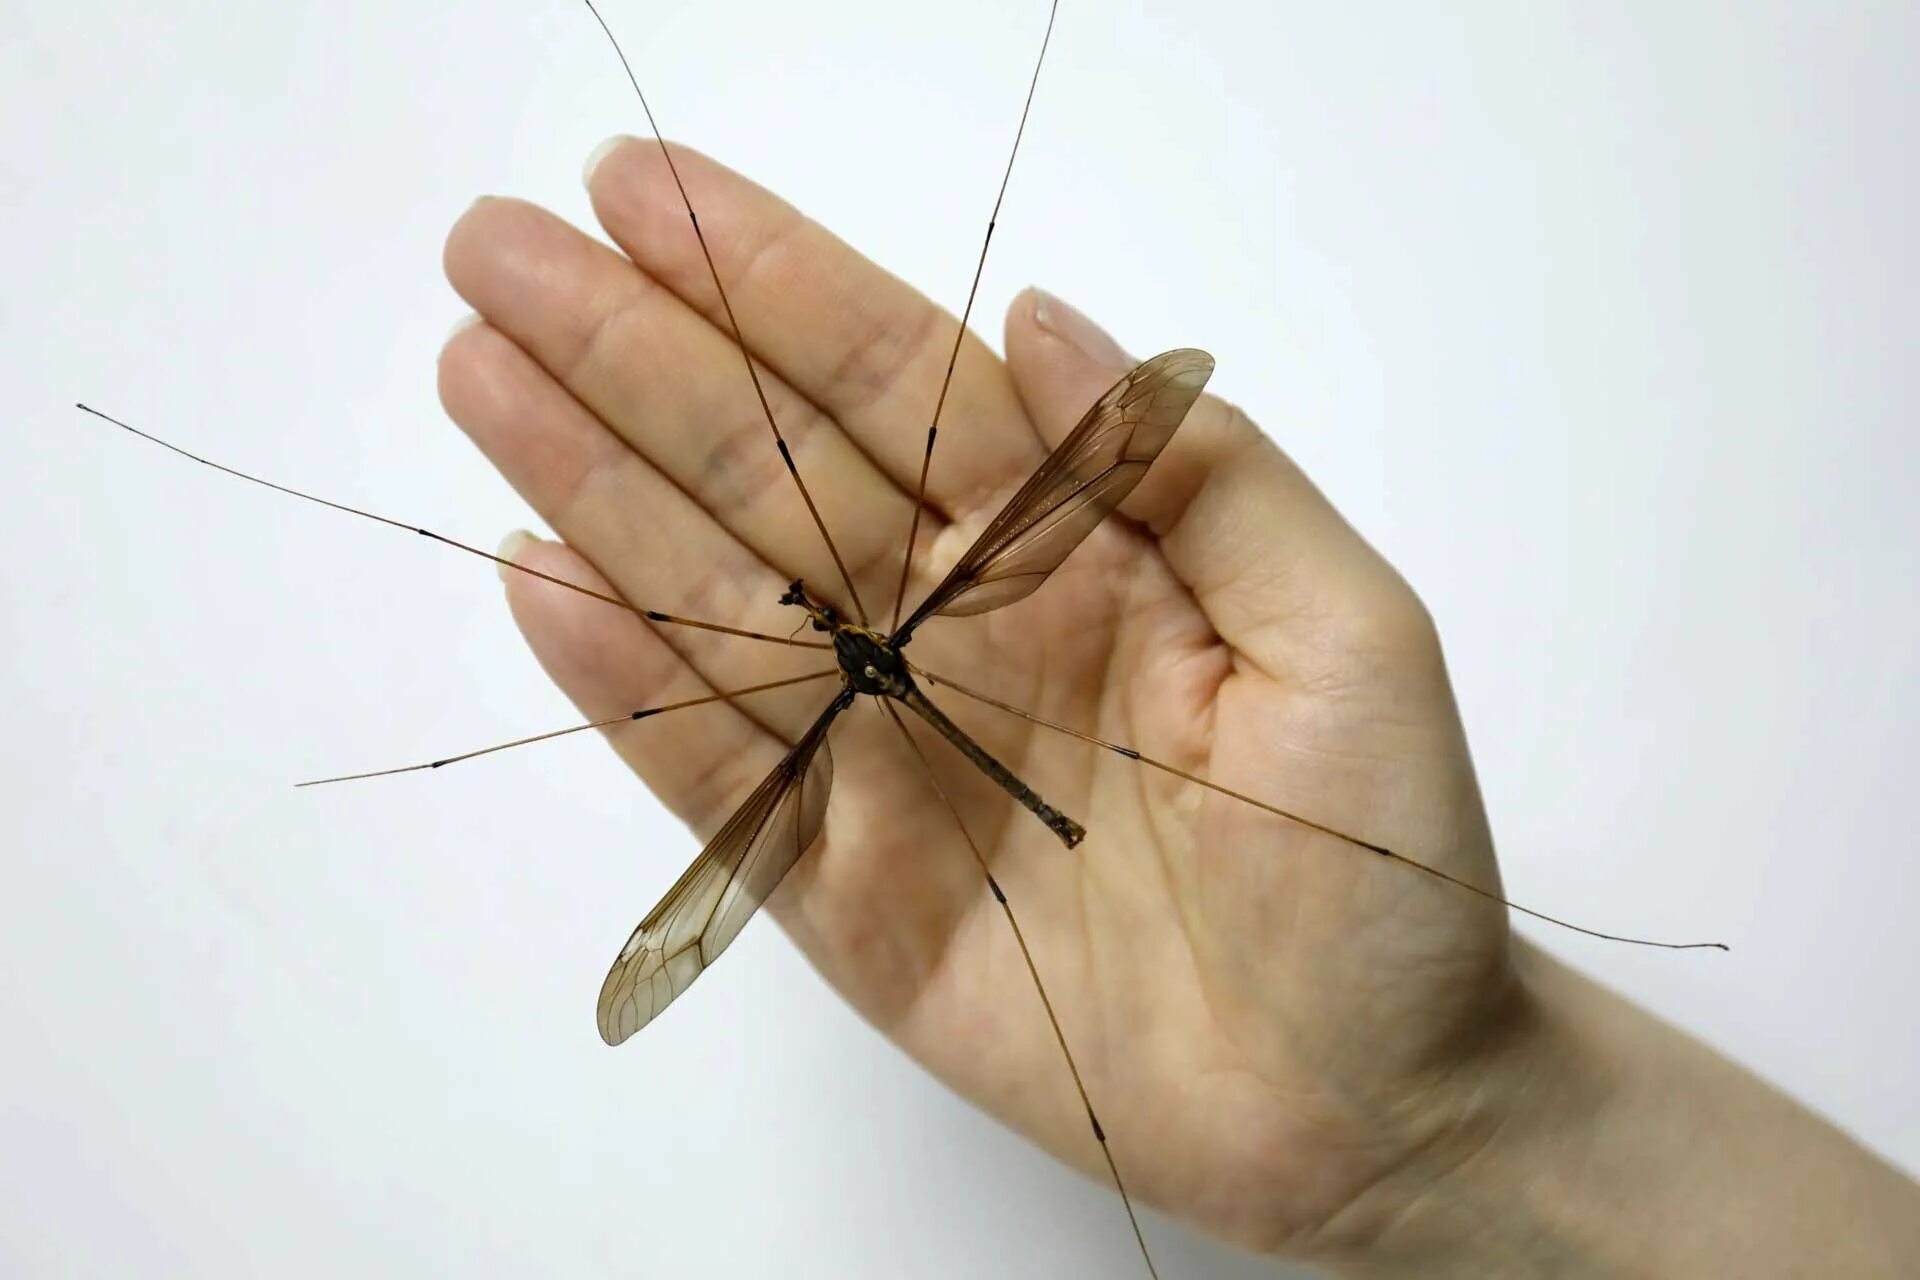 Как называется большой комар. Самый большой комар долгоножка. Малярийный комар долгоножка. Комар гигант - долгоножка. Малярийный комар большой долгоножка.